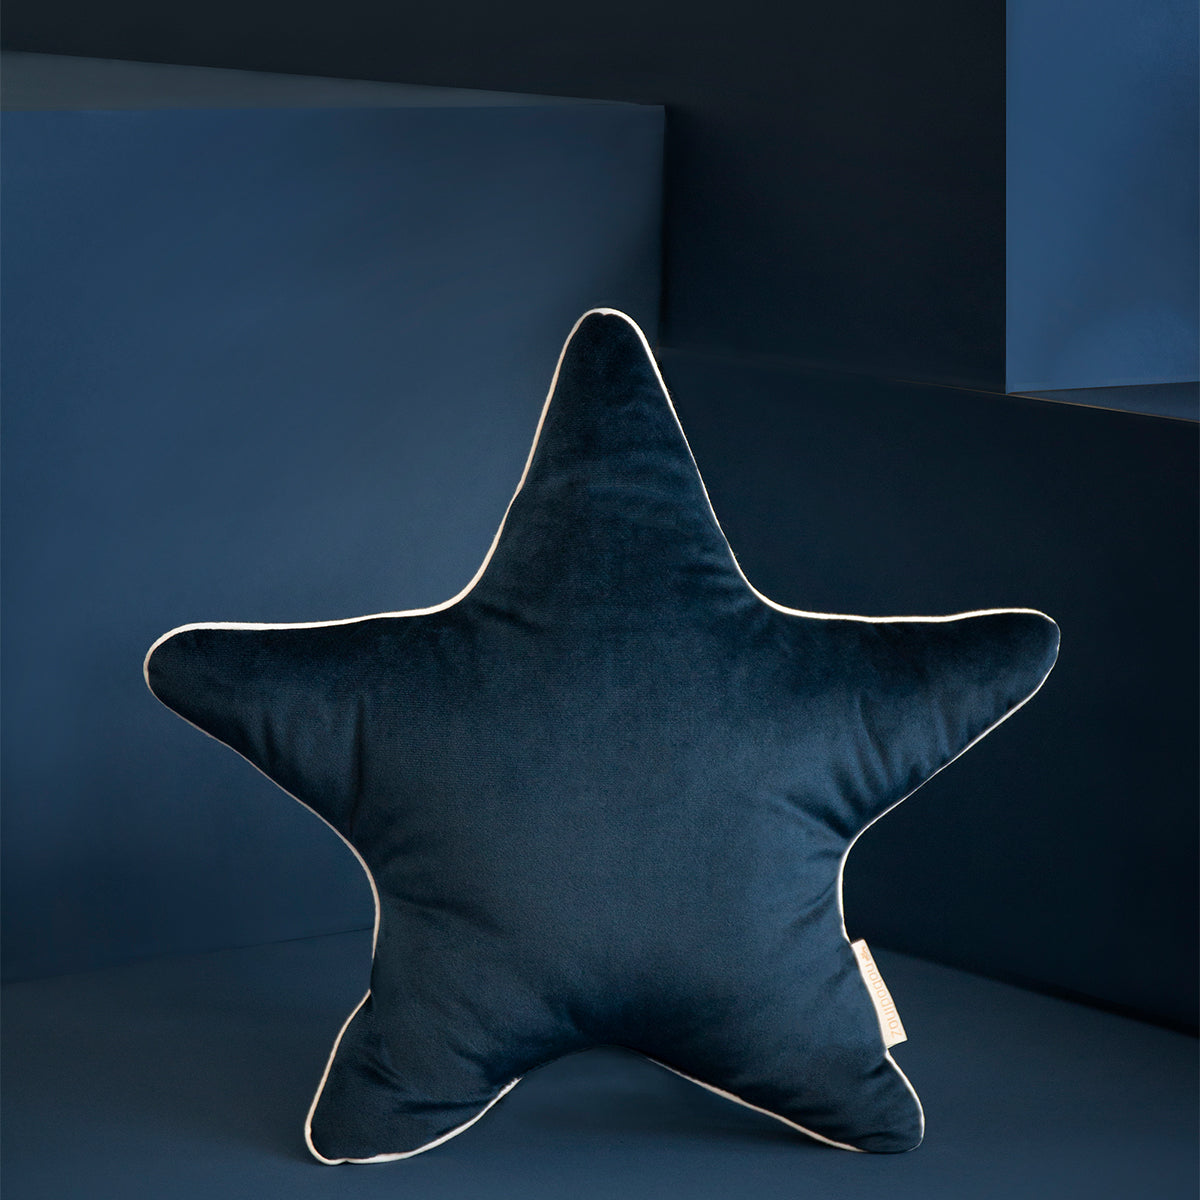 Het Nobodinoz Aristote velvet ster kussen night blue is zacht om tegen aan te liggen en cute om te zien. Dit stervormige sierkussen is ervoor gemaakt om het bed, de box, je stoel of je cosy corner te laten schitteren. VanZus